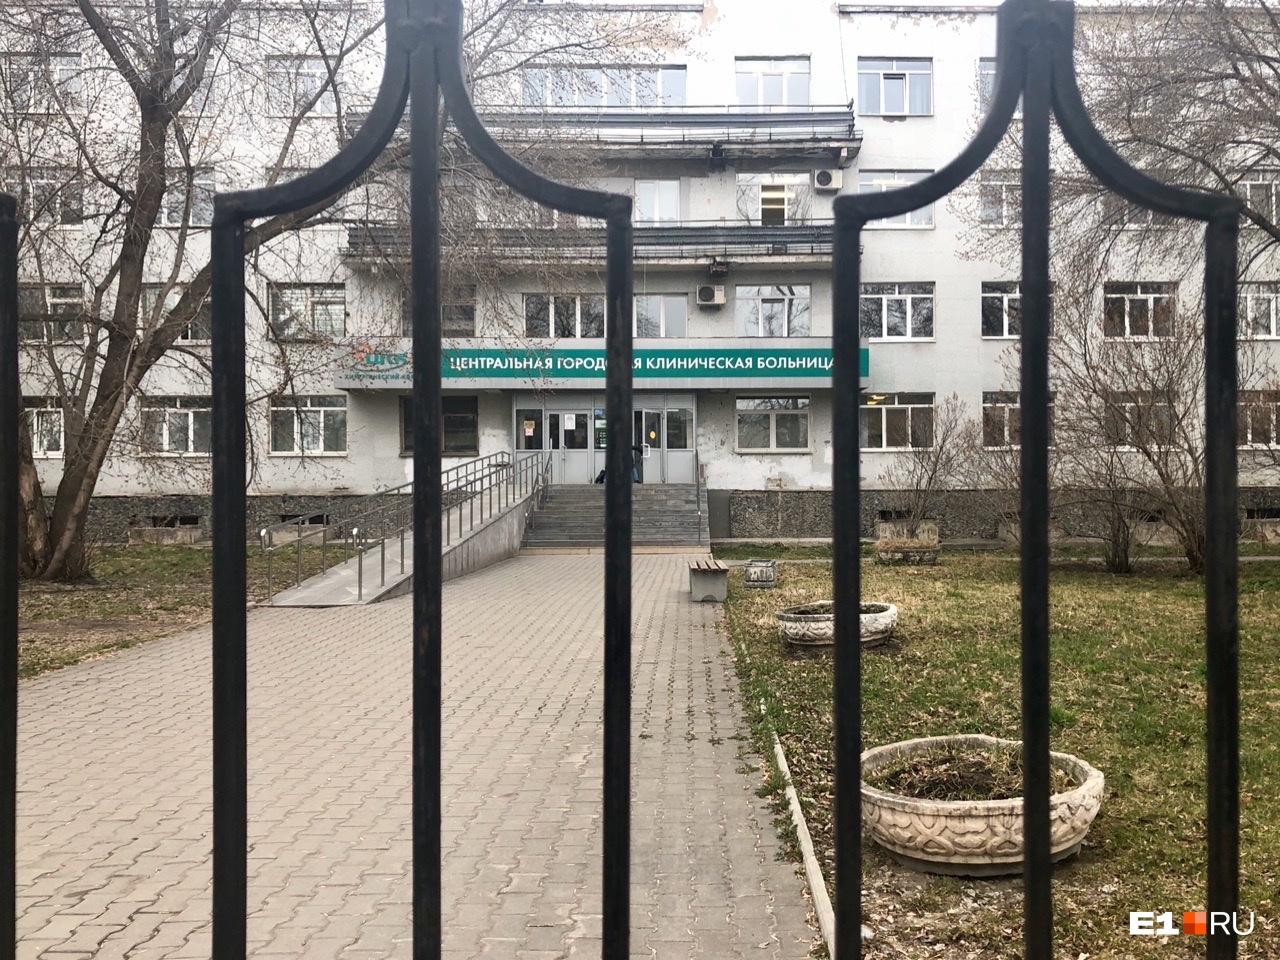 Будут ли на Урале закрывать новые больницы из-за коронавируса? Отвечает главный санитарный врач